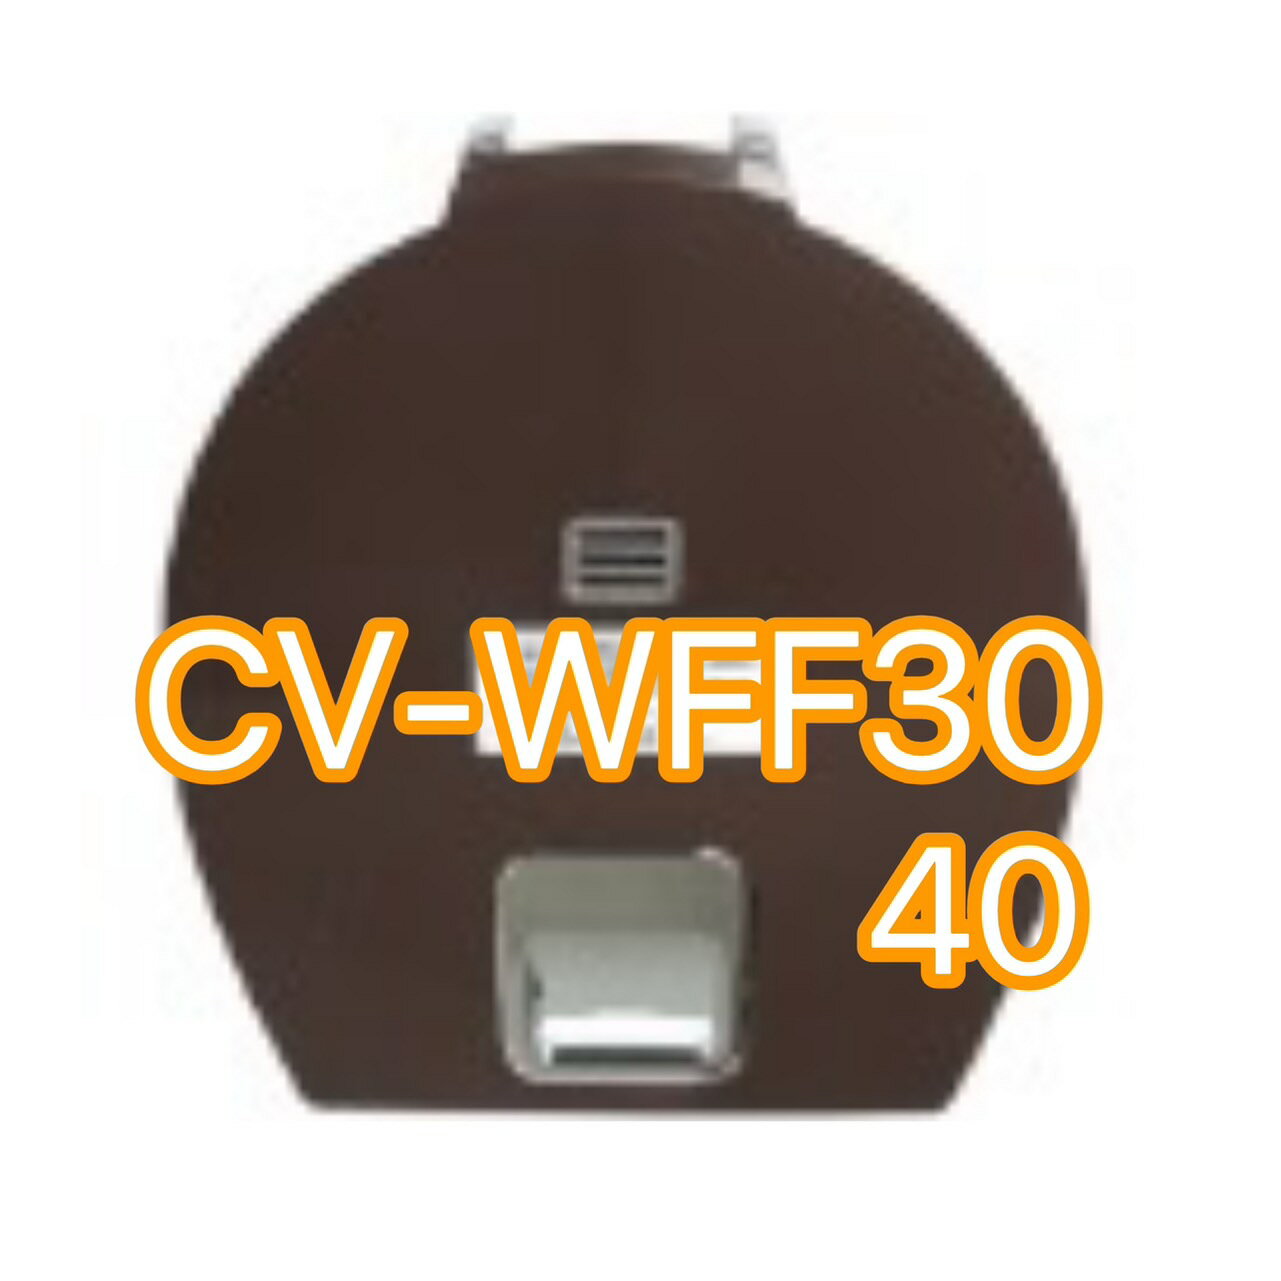 【象印】 真空保溫熱水瓶3.0L CV-WFF30 / CV-WFF40上蓋整組